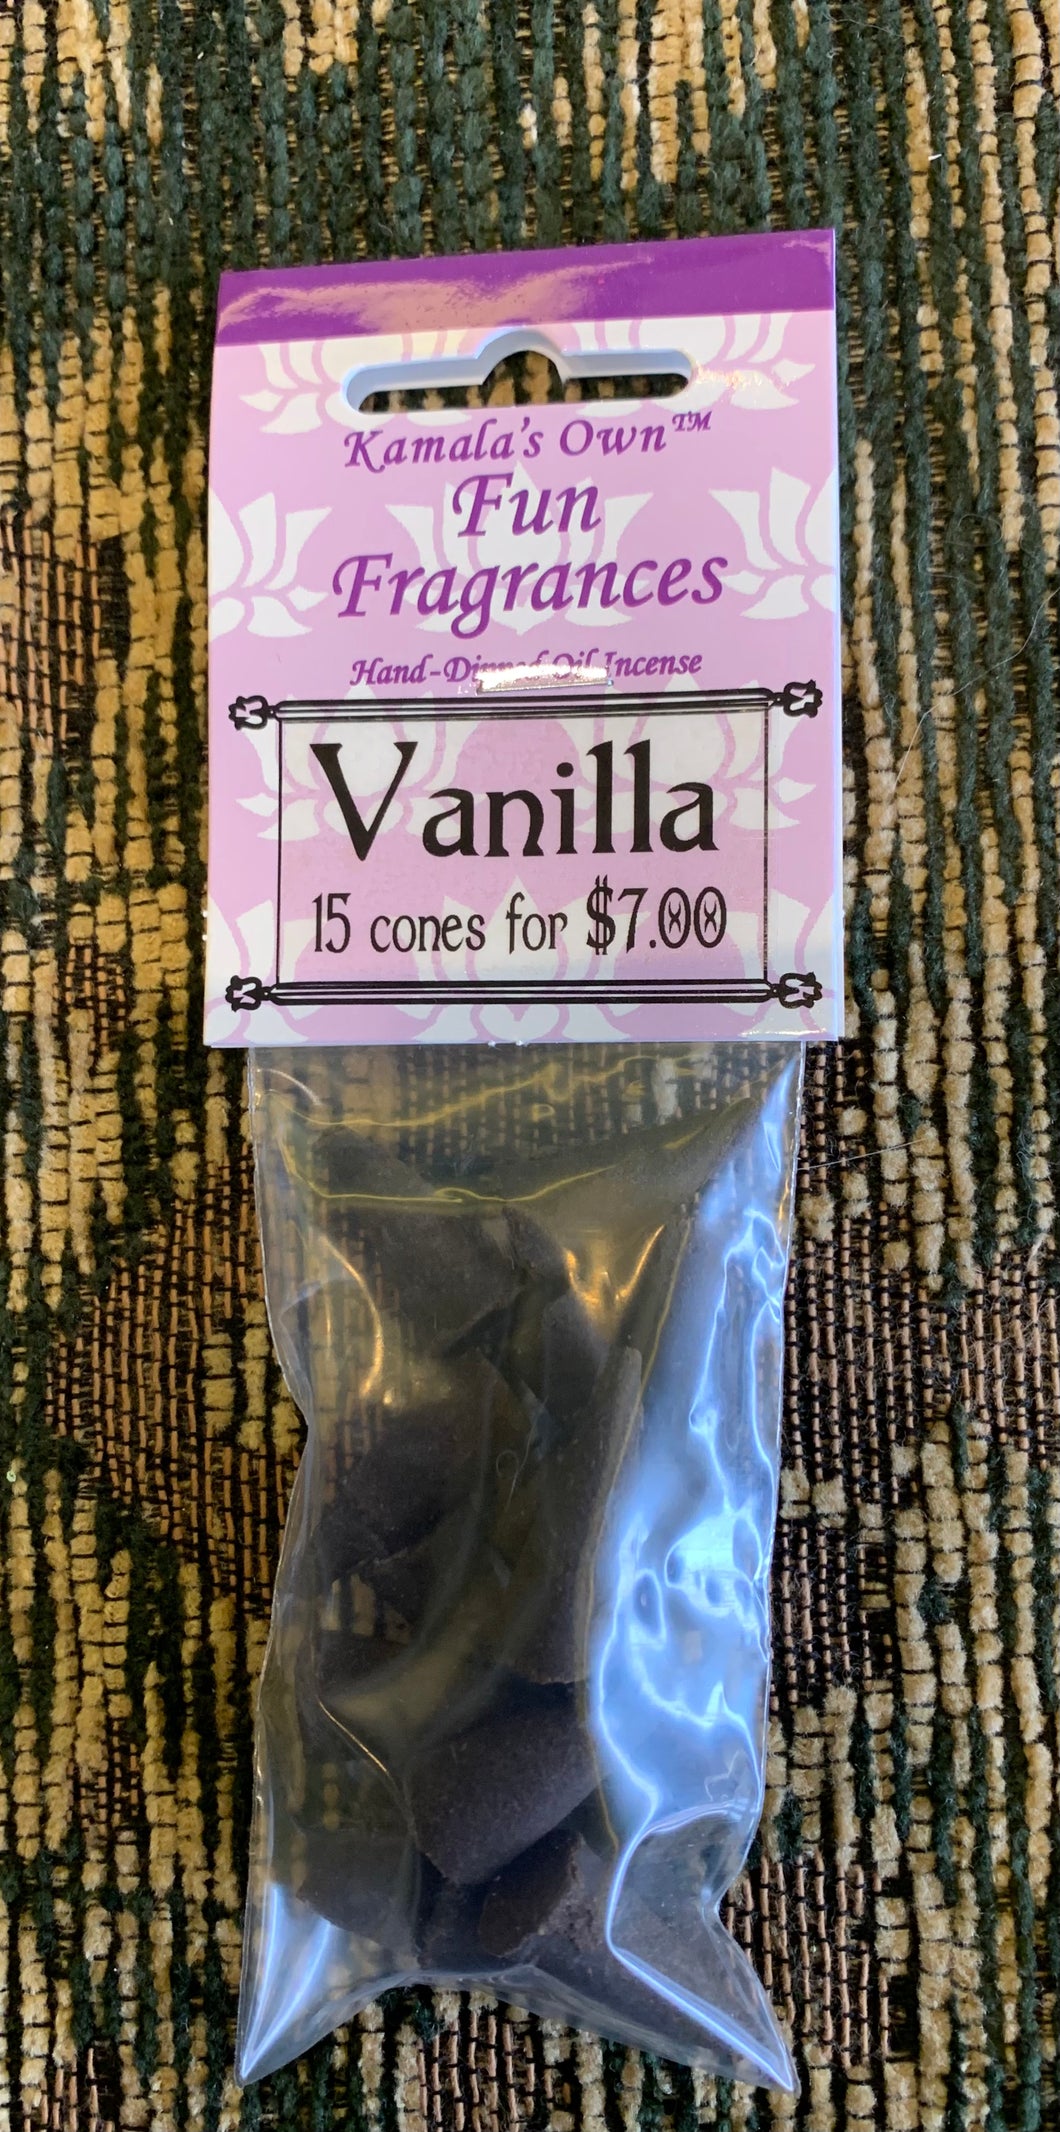 Vanilla cones